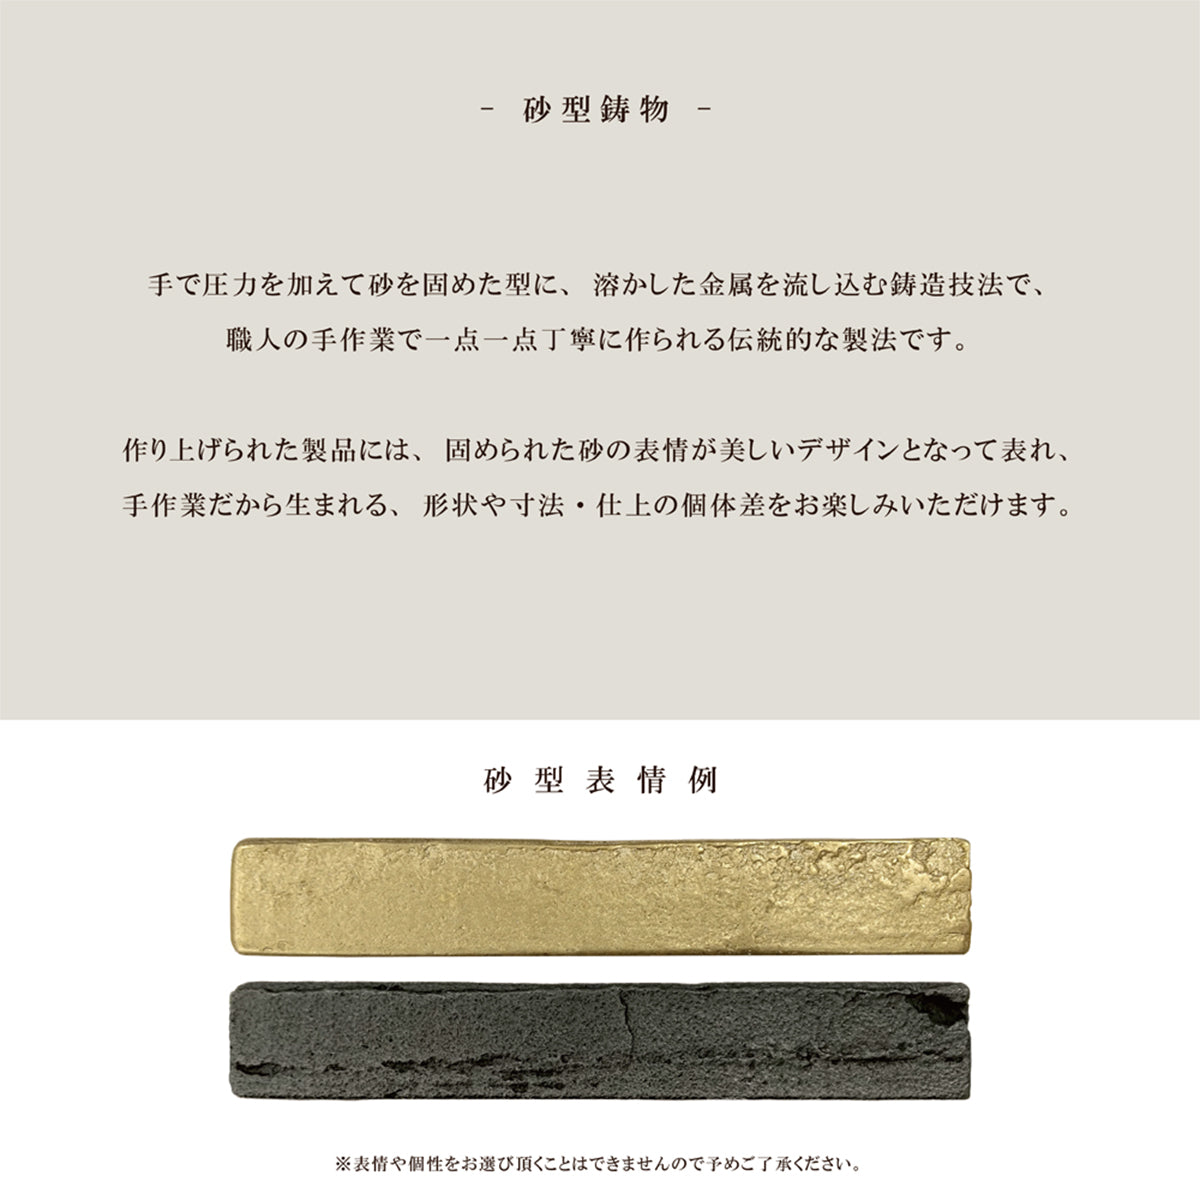 Brass Casting 真鍮鋳物 おしゃれ 棚受け (L型 黒染め 2個セット TB-200)